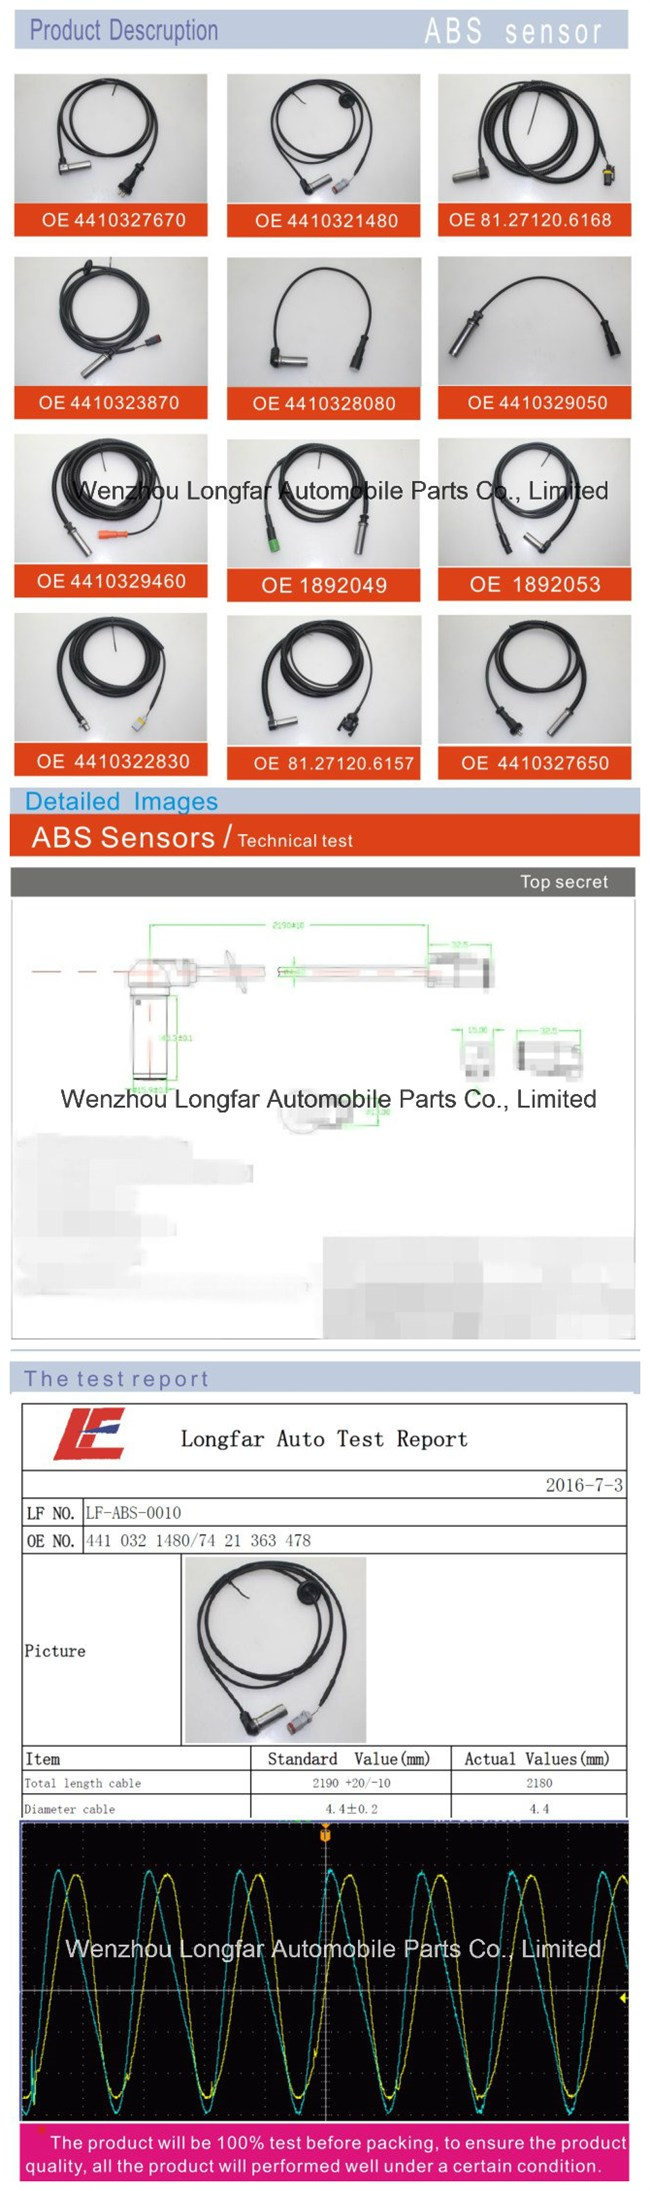 ABS Sensor Anti-Lock Braking System Transducer Indicator Sensor 4410323870, 2260133,2.25333,096.251,21247154,7420528661,2260133,Bk8400154 for Volvo Renault